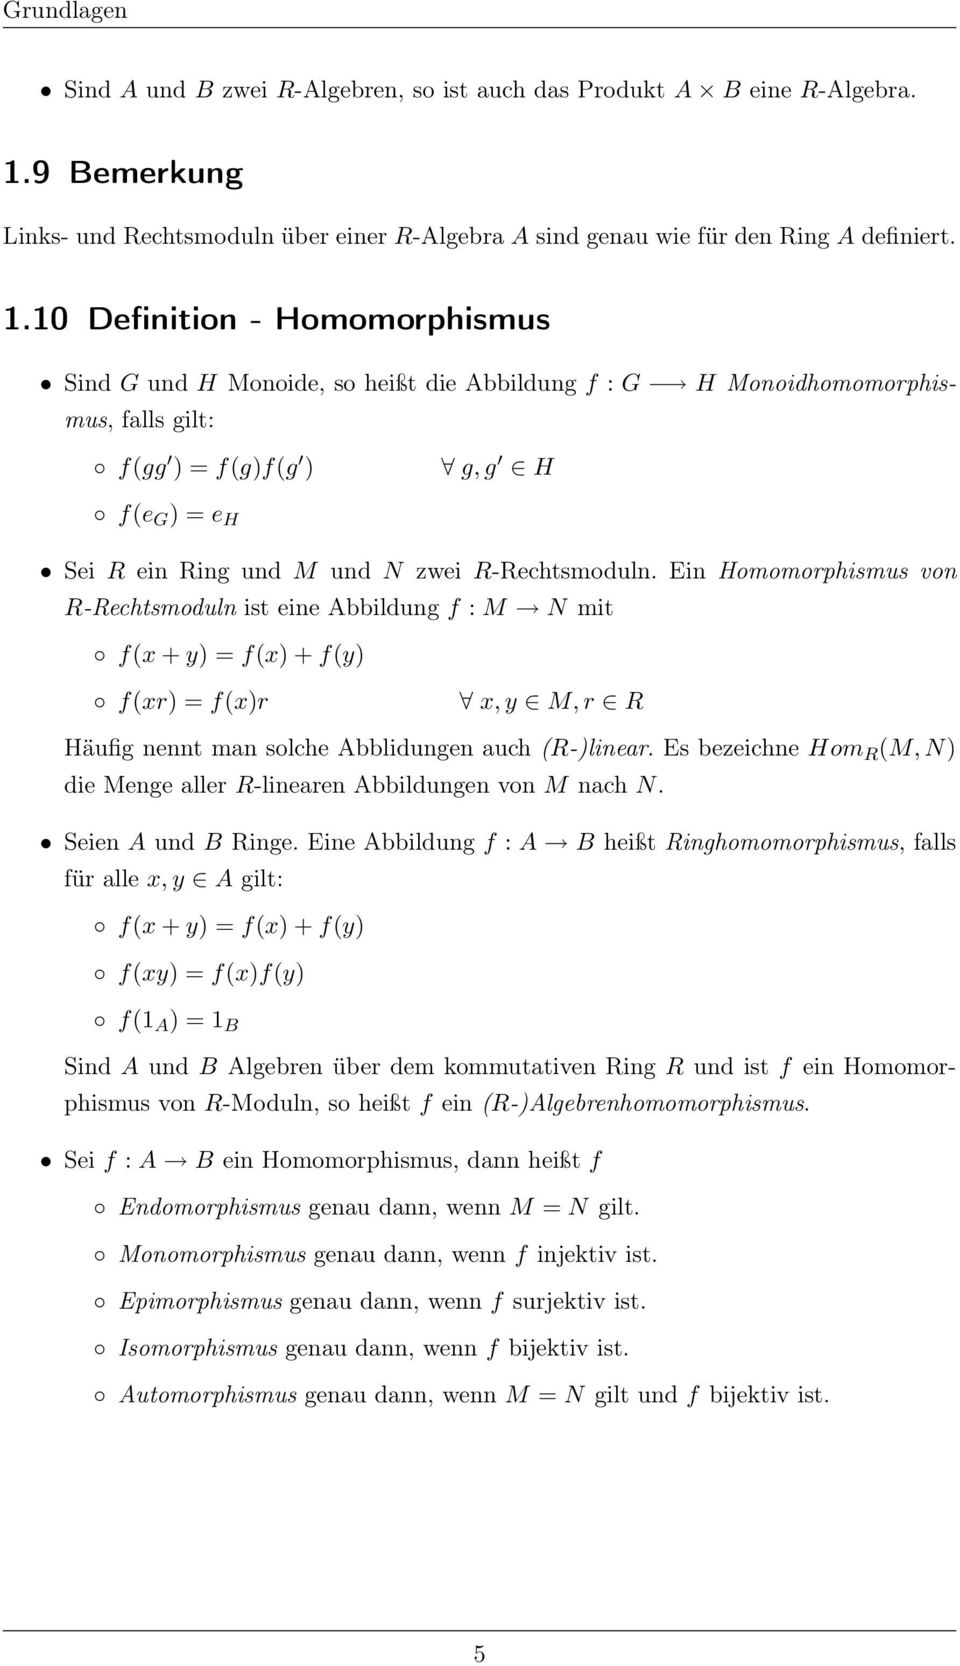 10 Definition - Homomorphismus Sind G und H Monoide, so heißt die Abbildung f : G H Monoidhomomorphismus, falls gilt: f(gg ) = f(g)f(g ) g, g H f(e G ) = e H Sei R ein Ring und M und N zwei